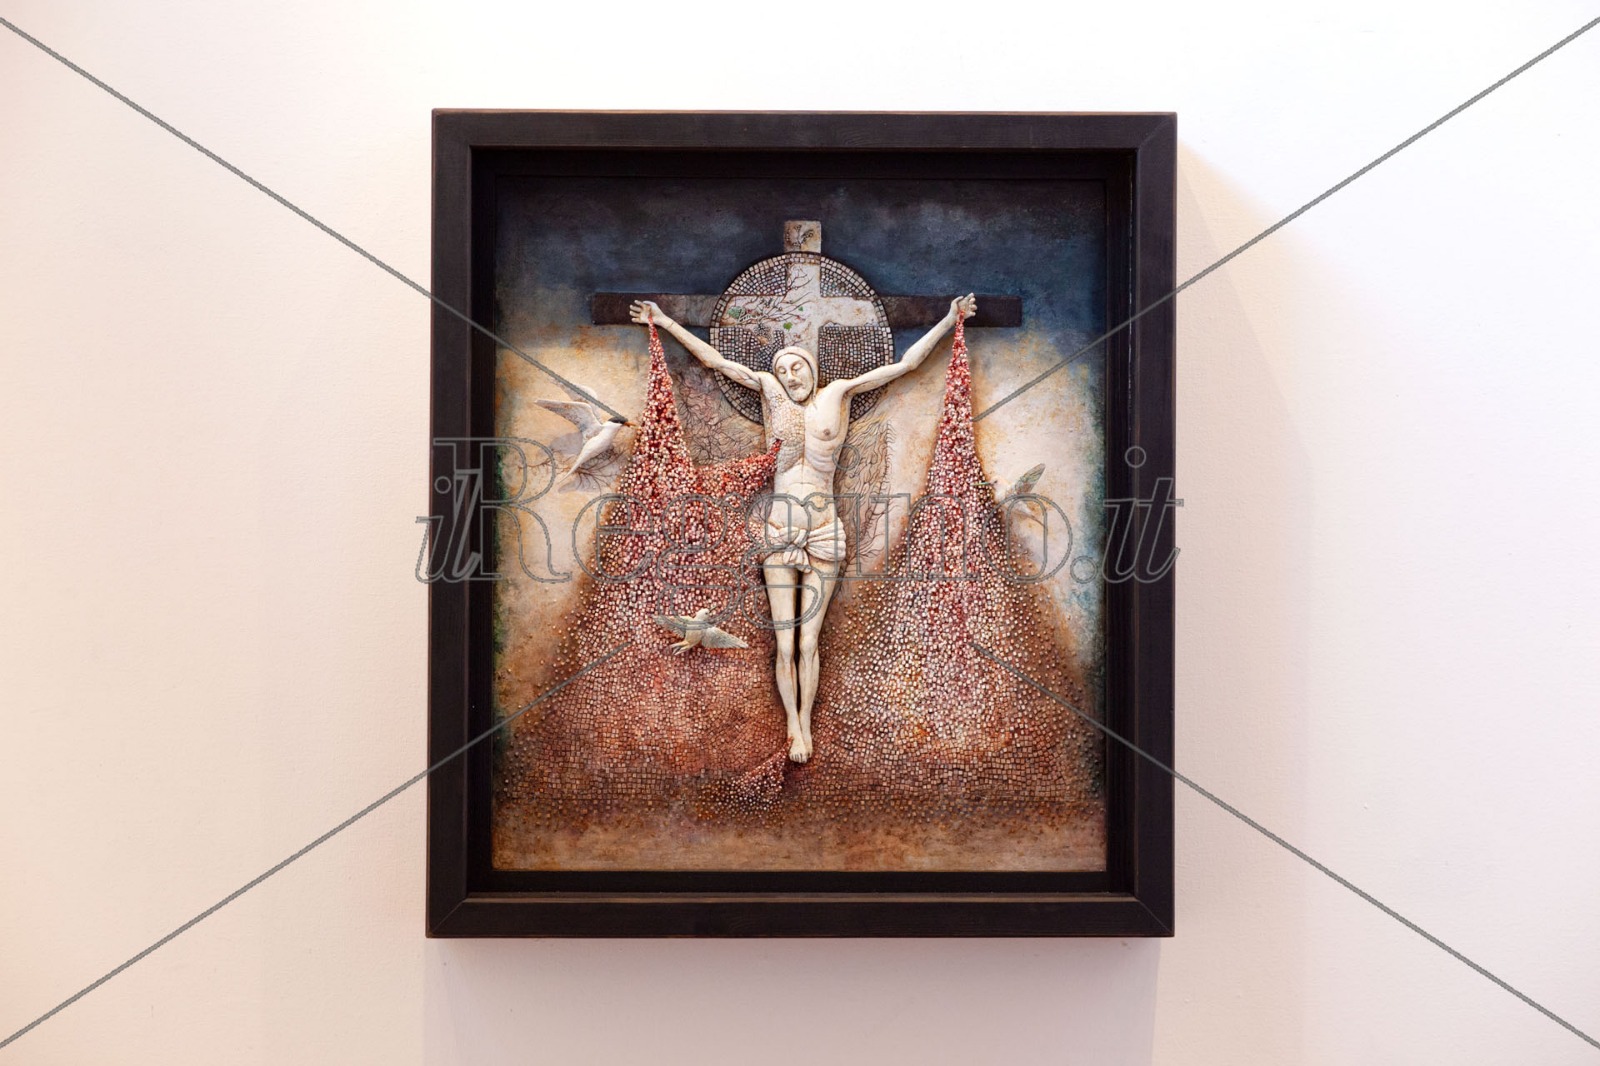 “La bellezza del crocifisso”, si rinnova il dialogo tra fede e arte contemporanea